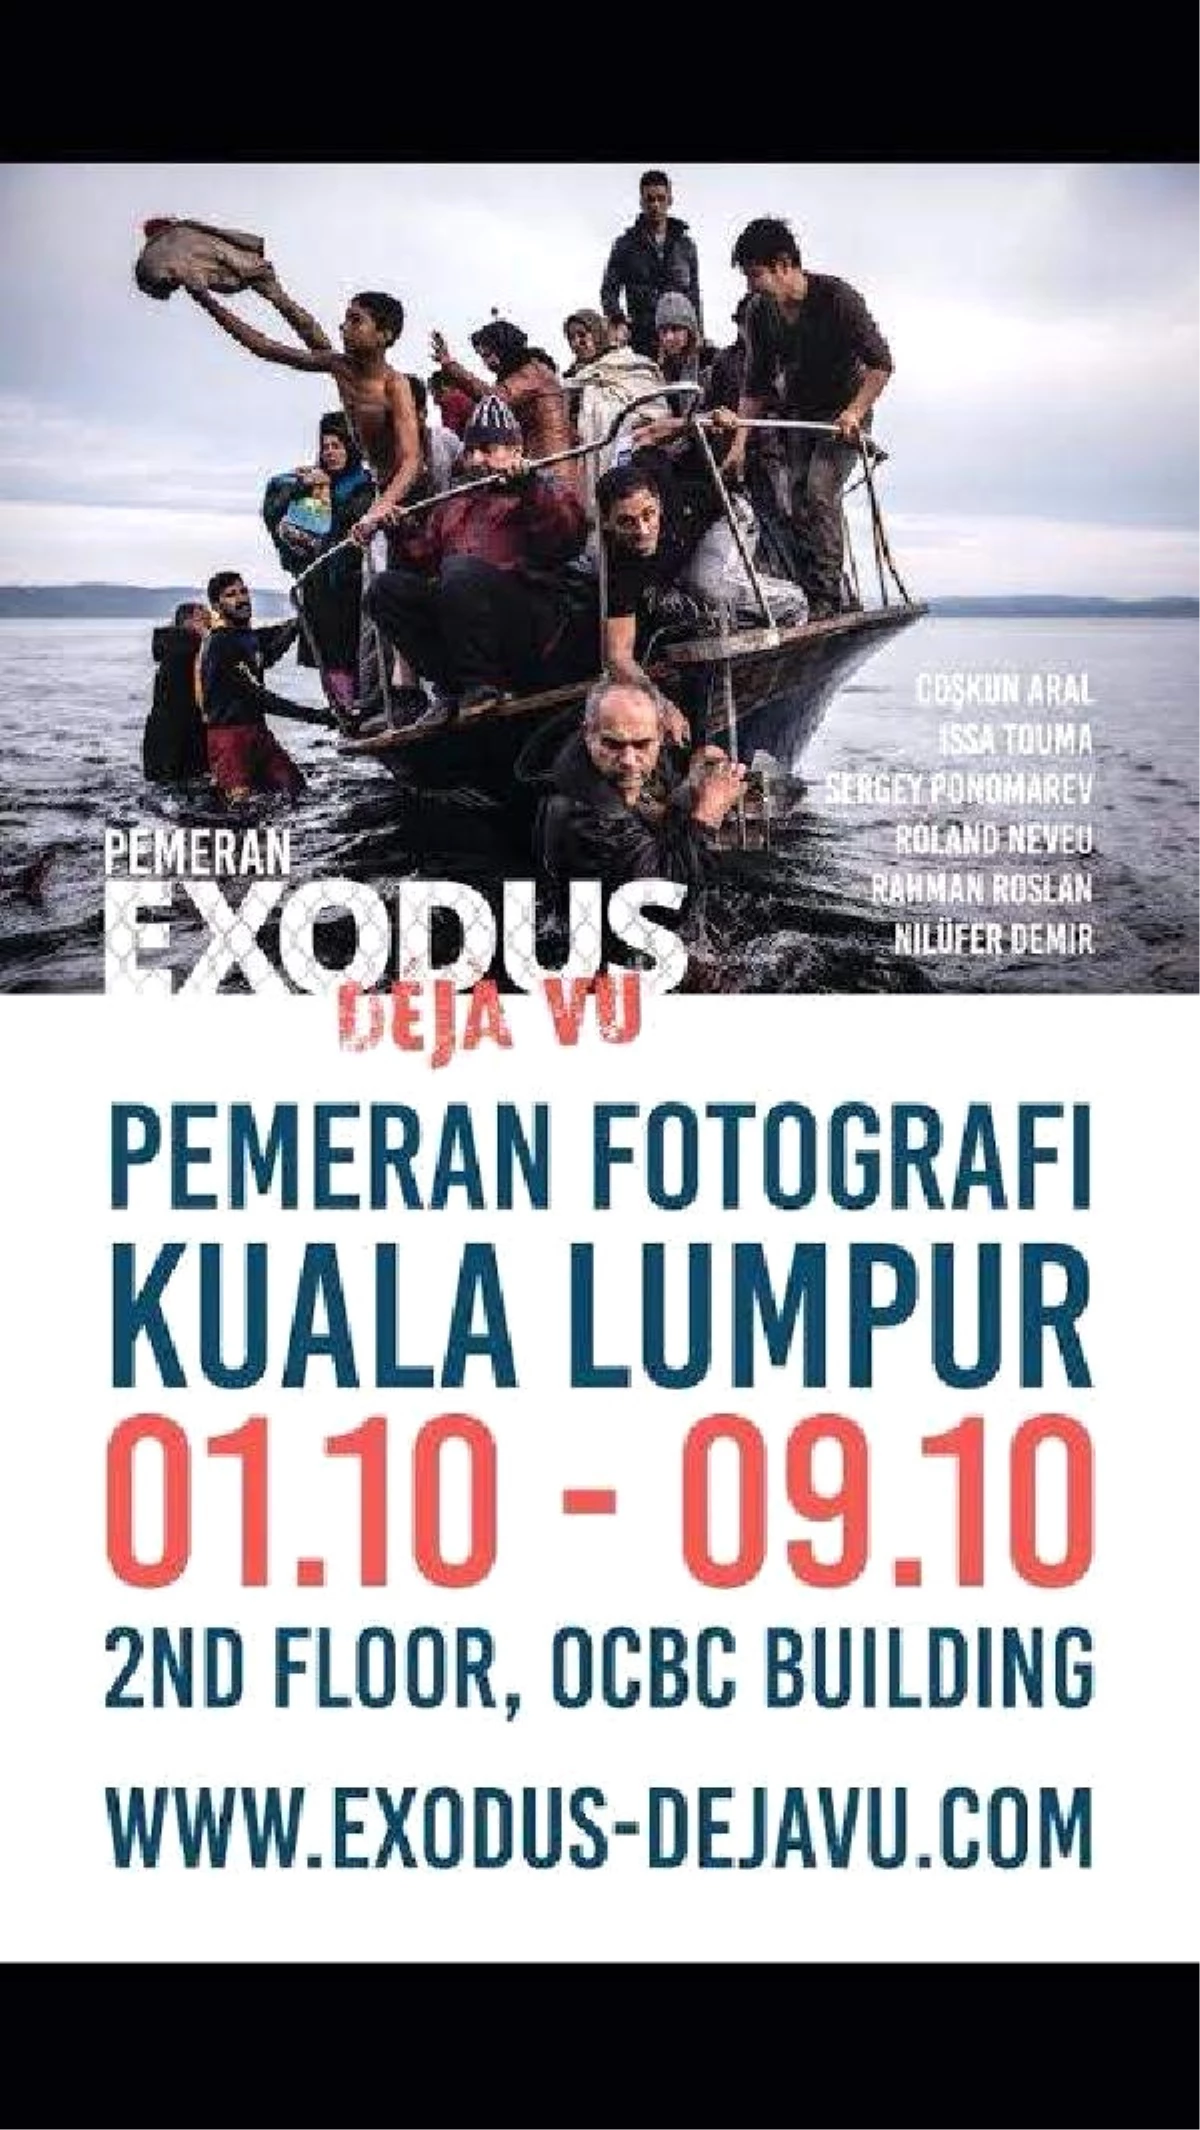 Mülteci Dramına Uluslararası "Exodus-Dejavu" Projesi ile Dikkat Çekilecek